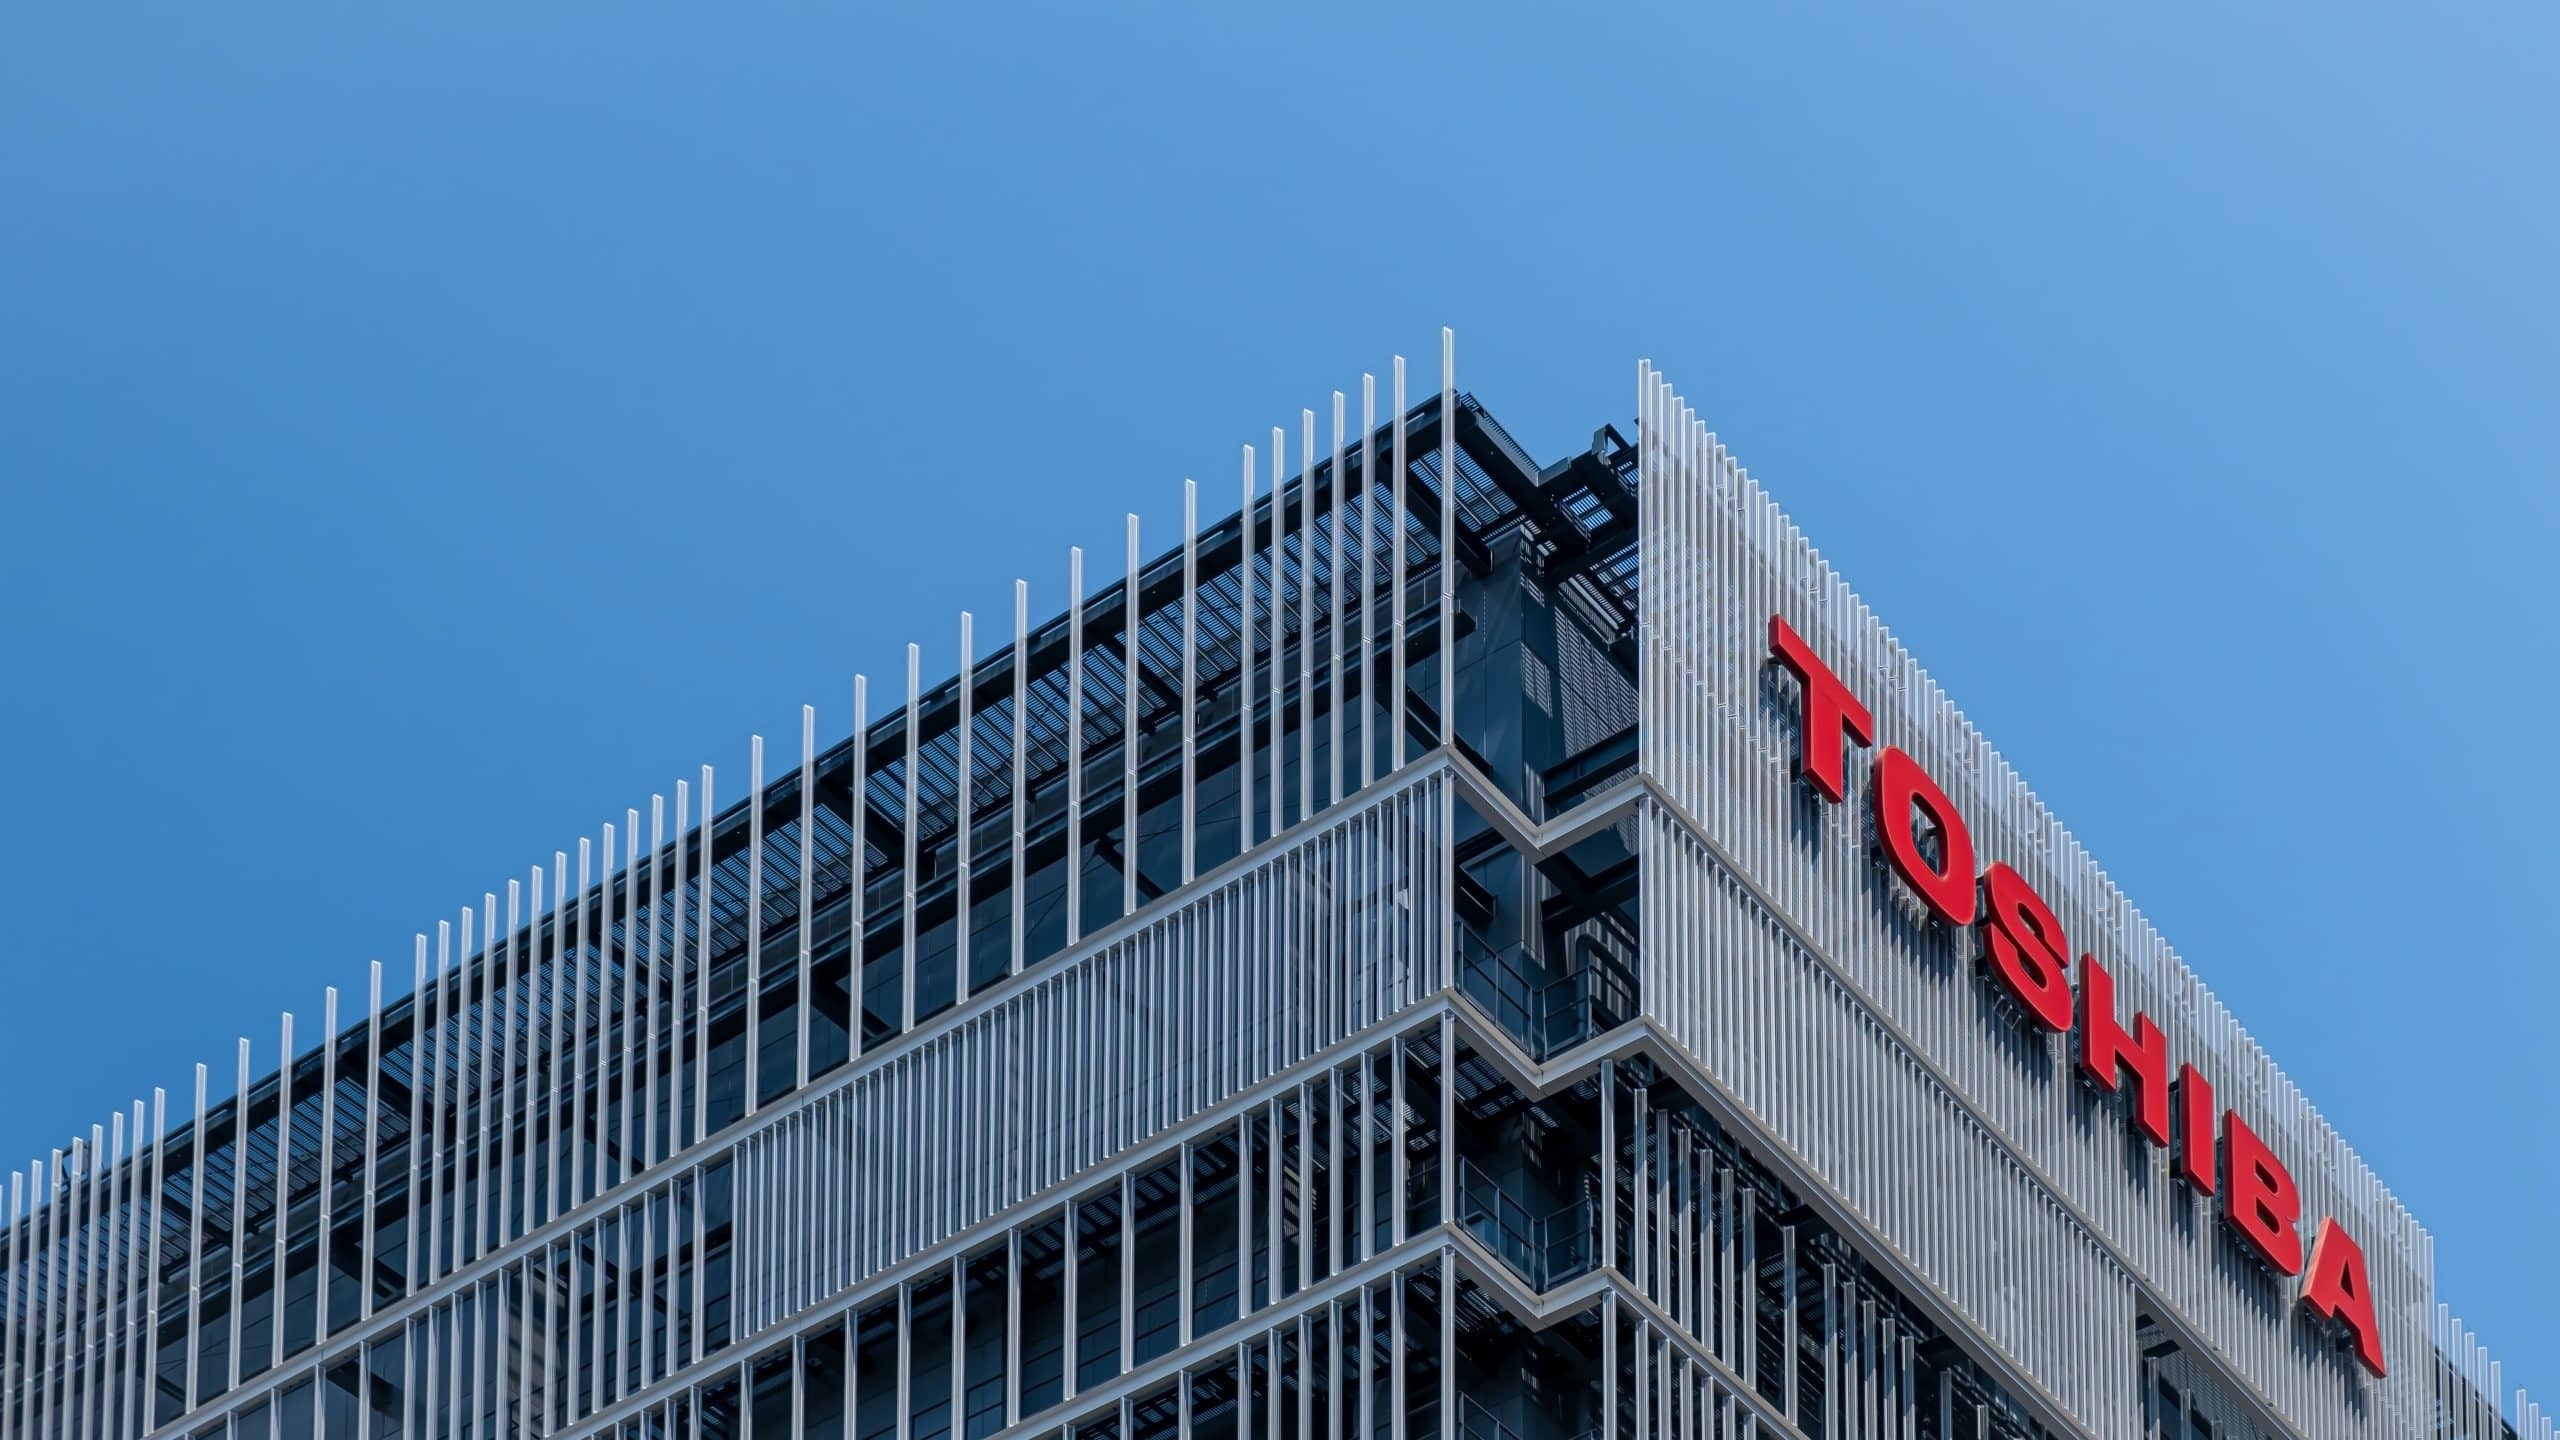 Le logo de Toshiba sur un immeuble.